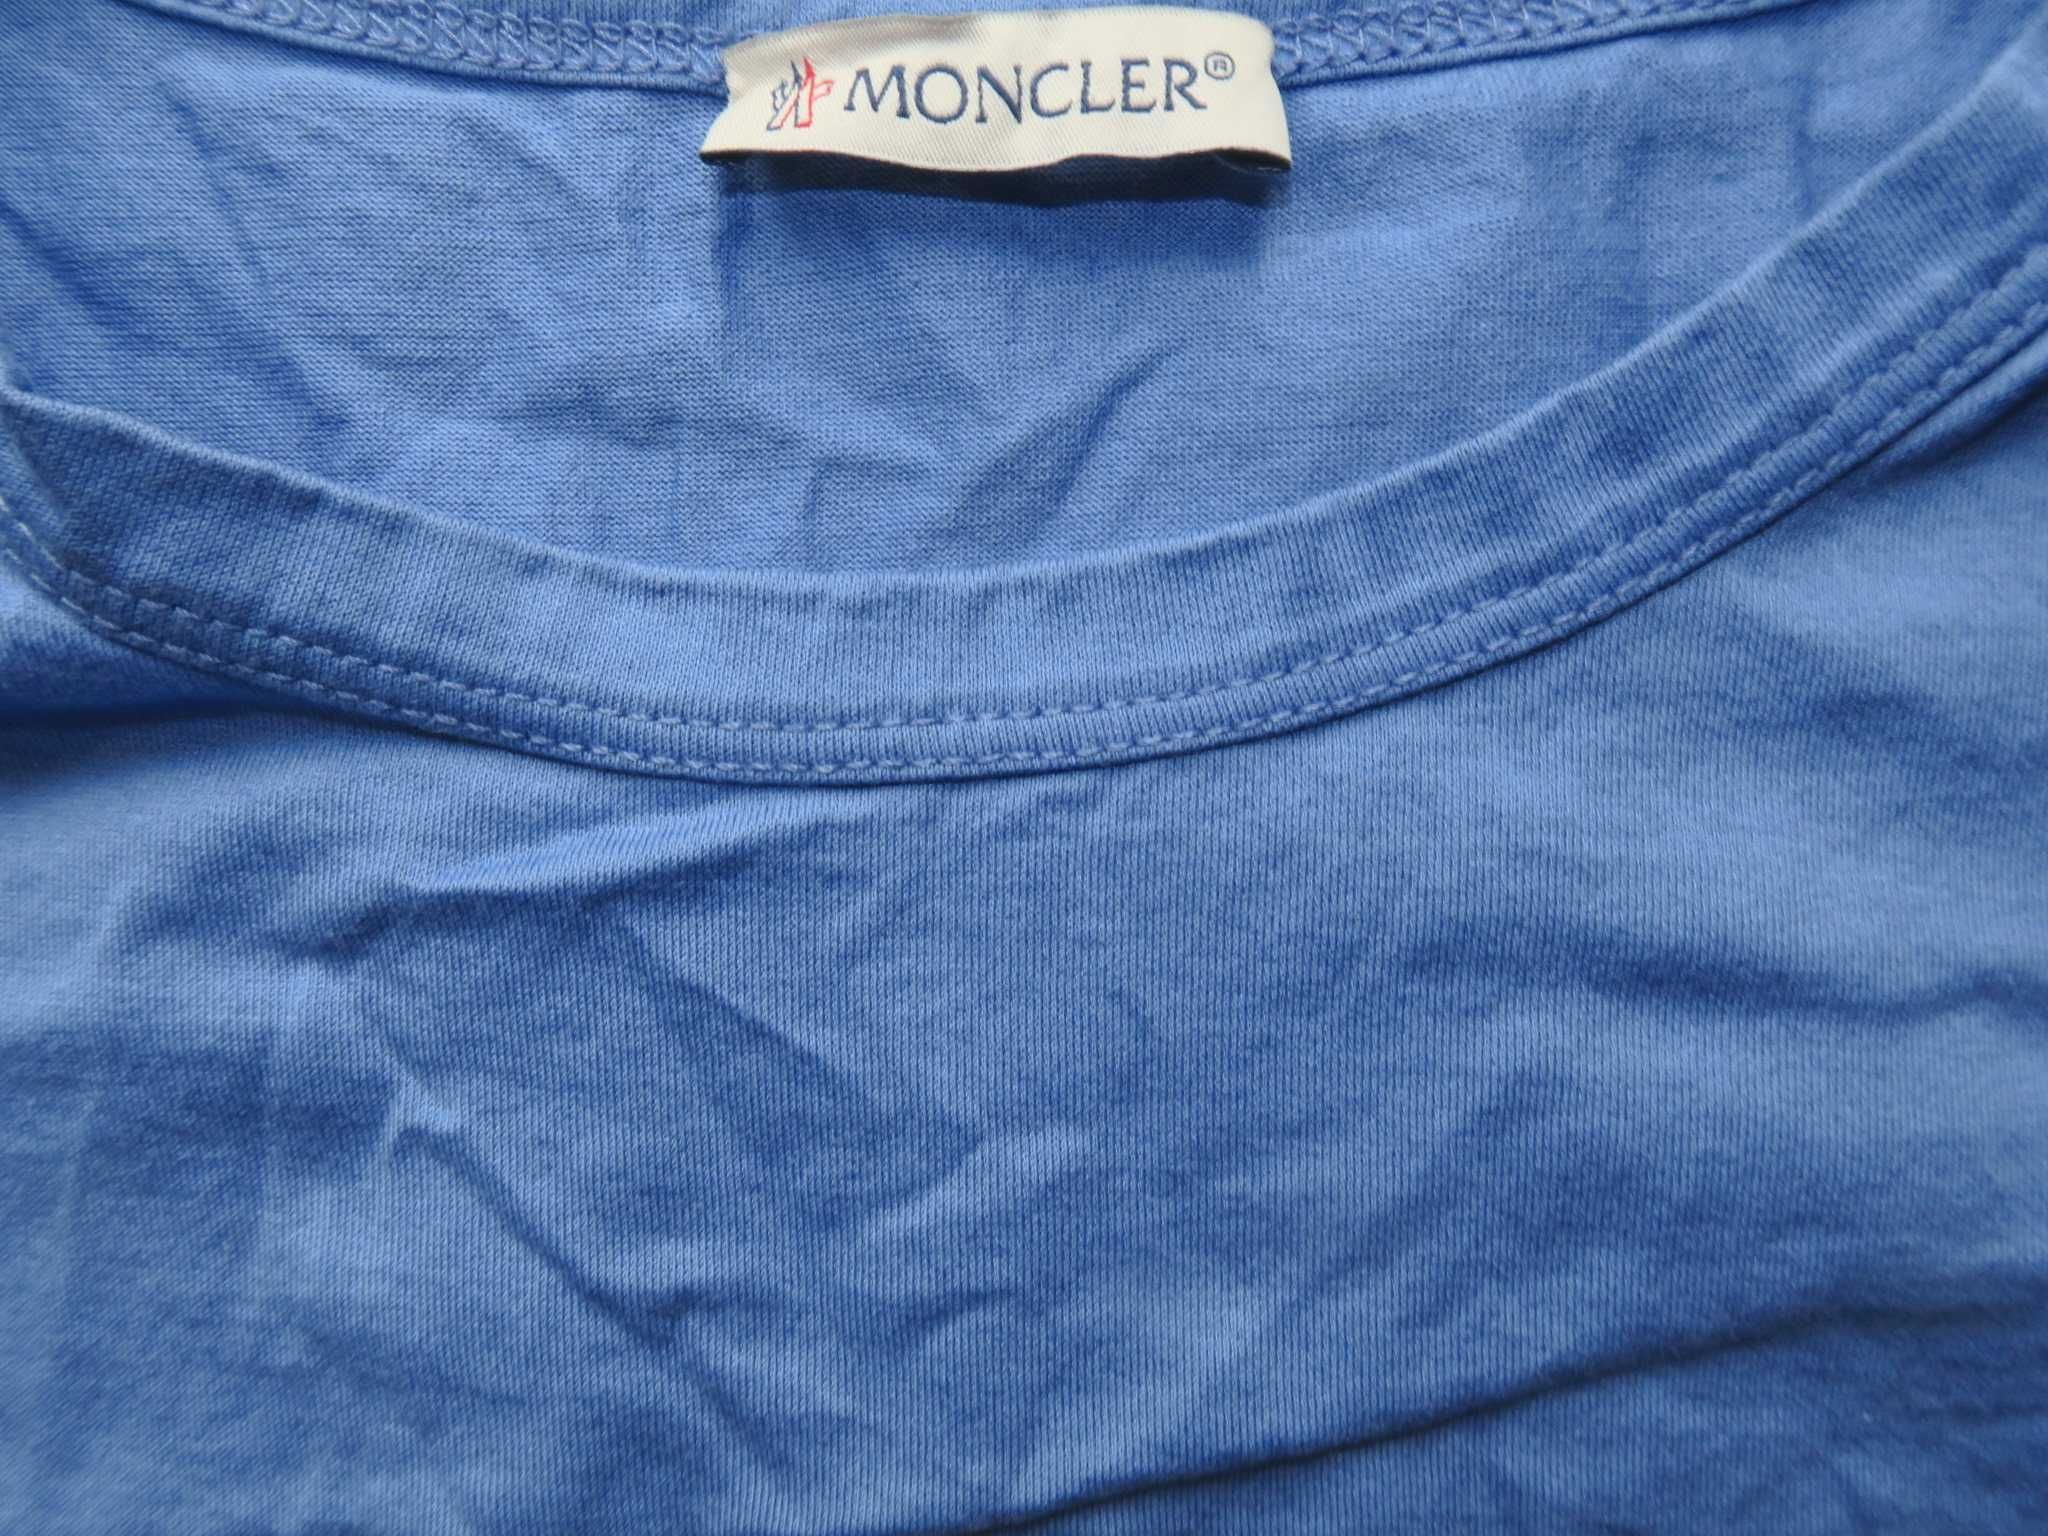 Moncler koszulka t-shirt M